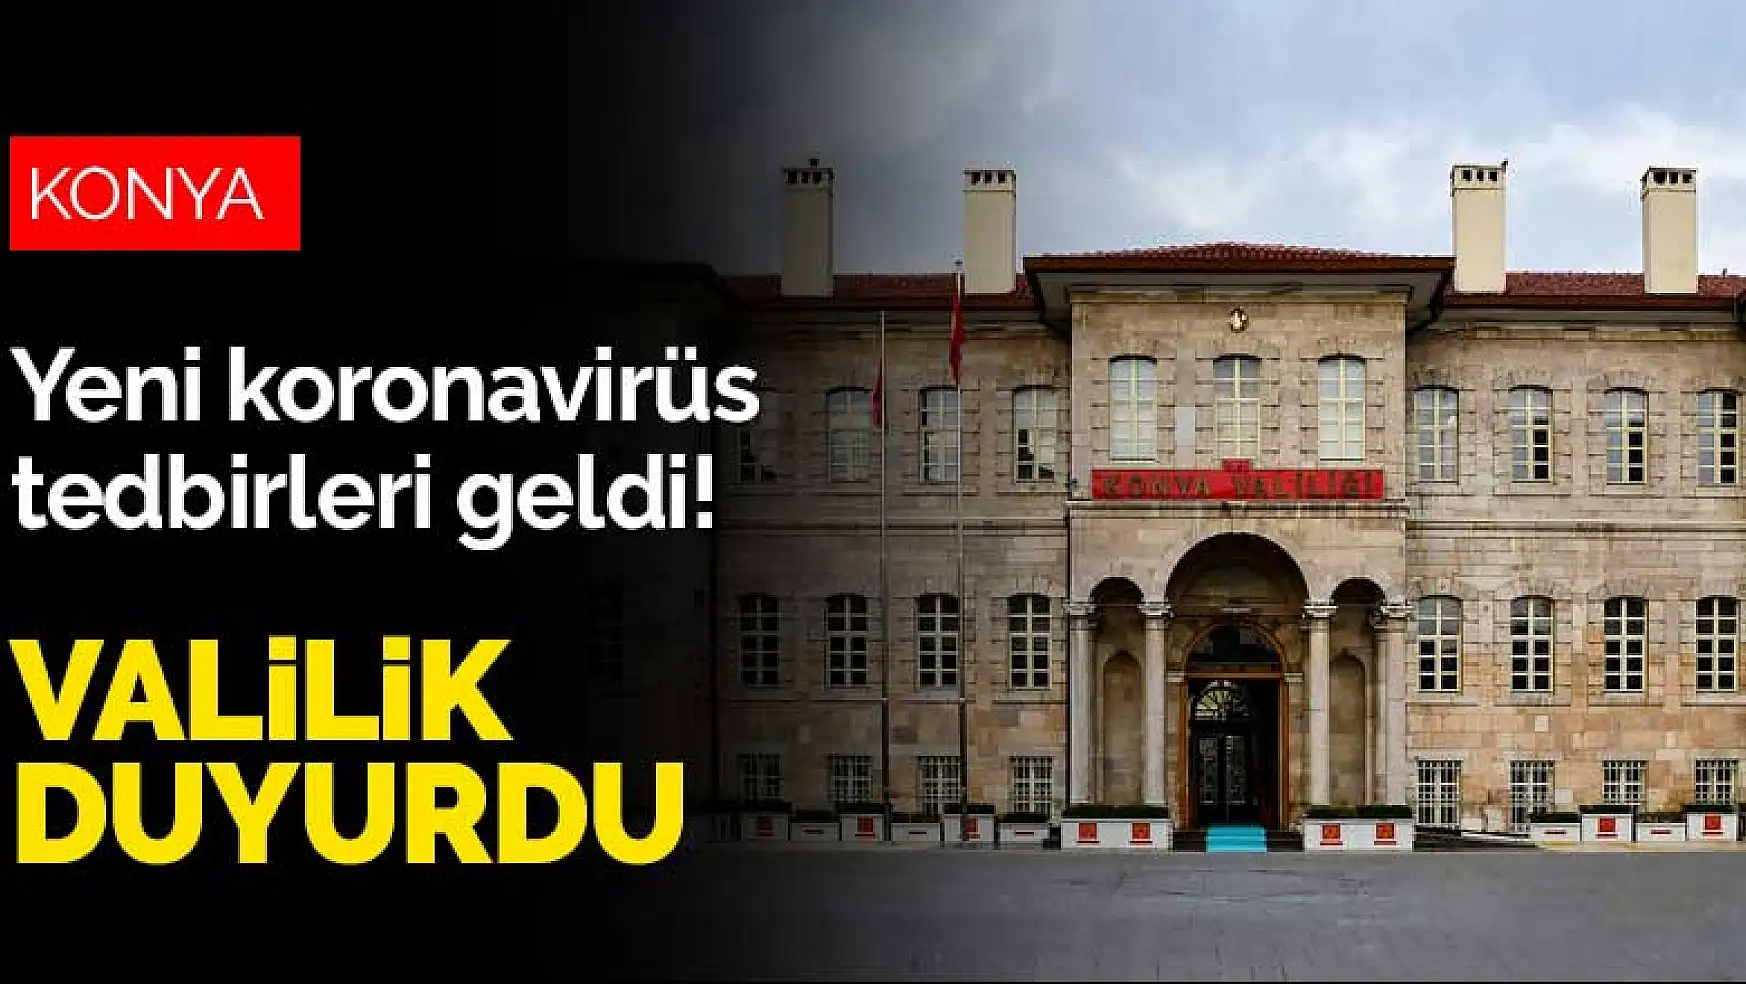 Konya'ya da yeni koronavirüs tedbirleri geldi! Valilik duyurdu, akşam 10'dan sonra yasak